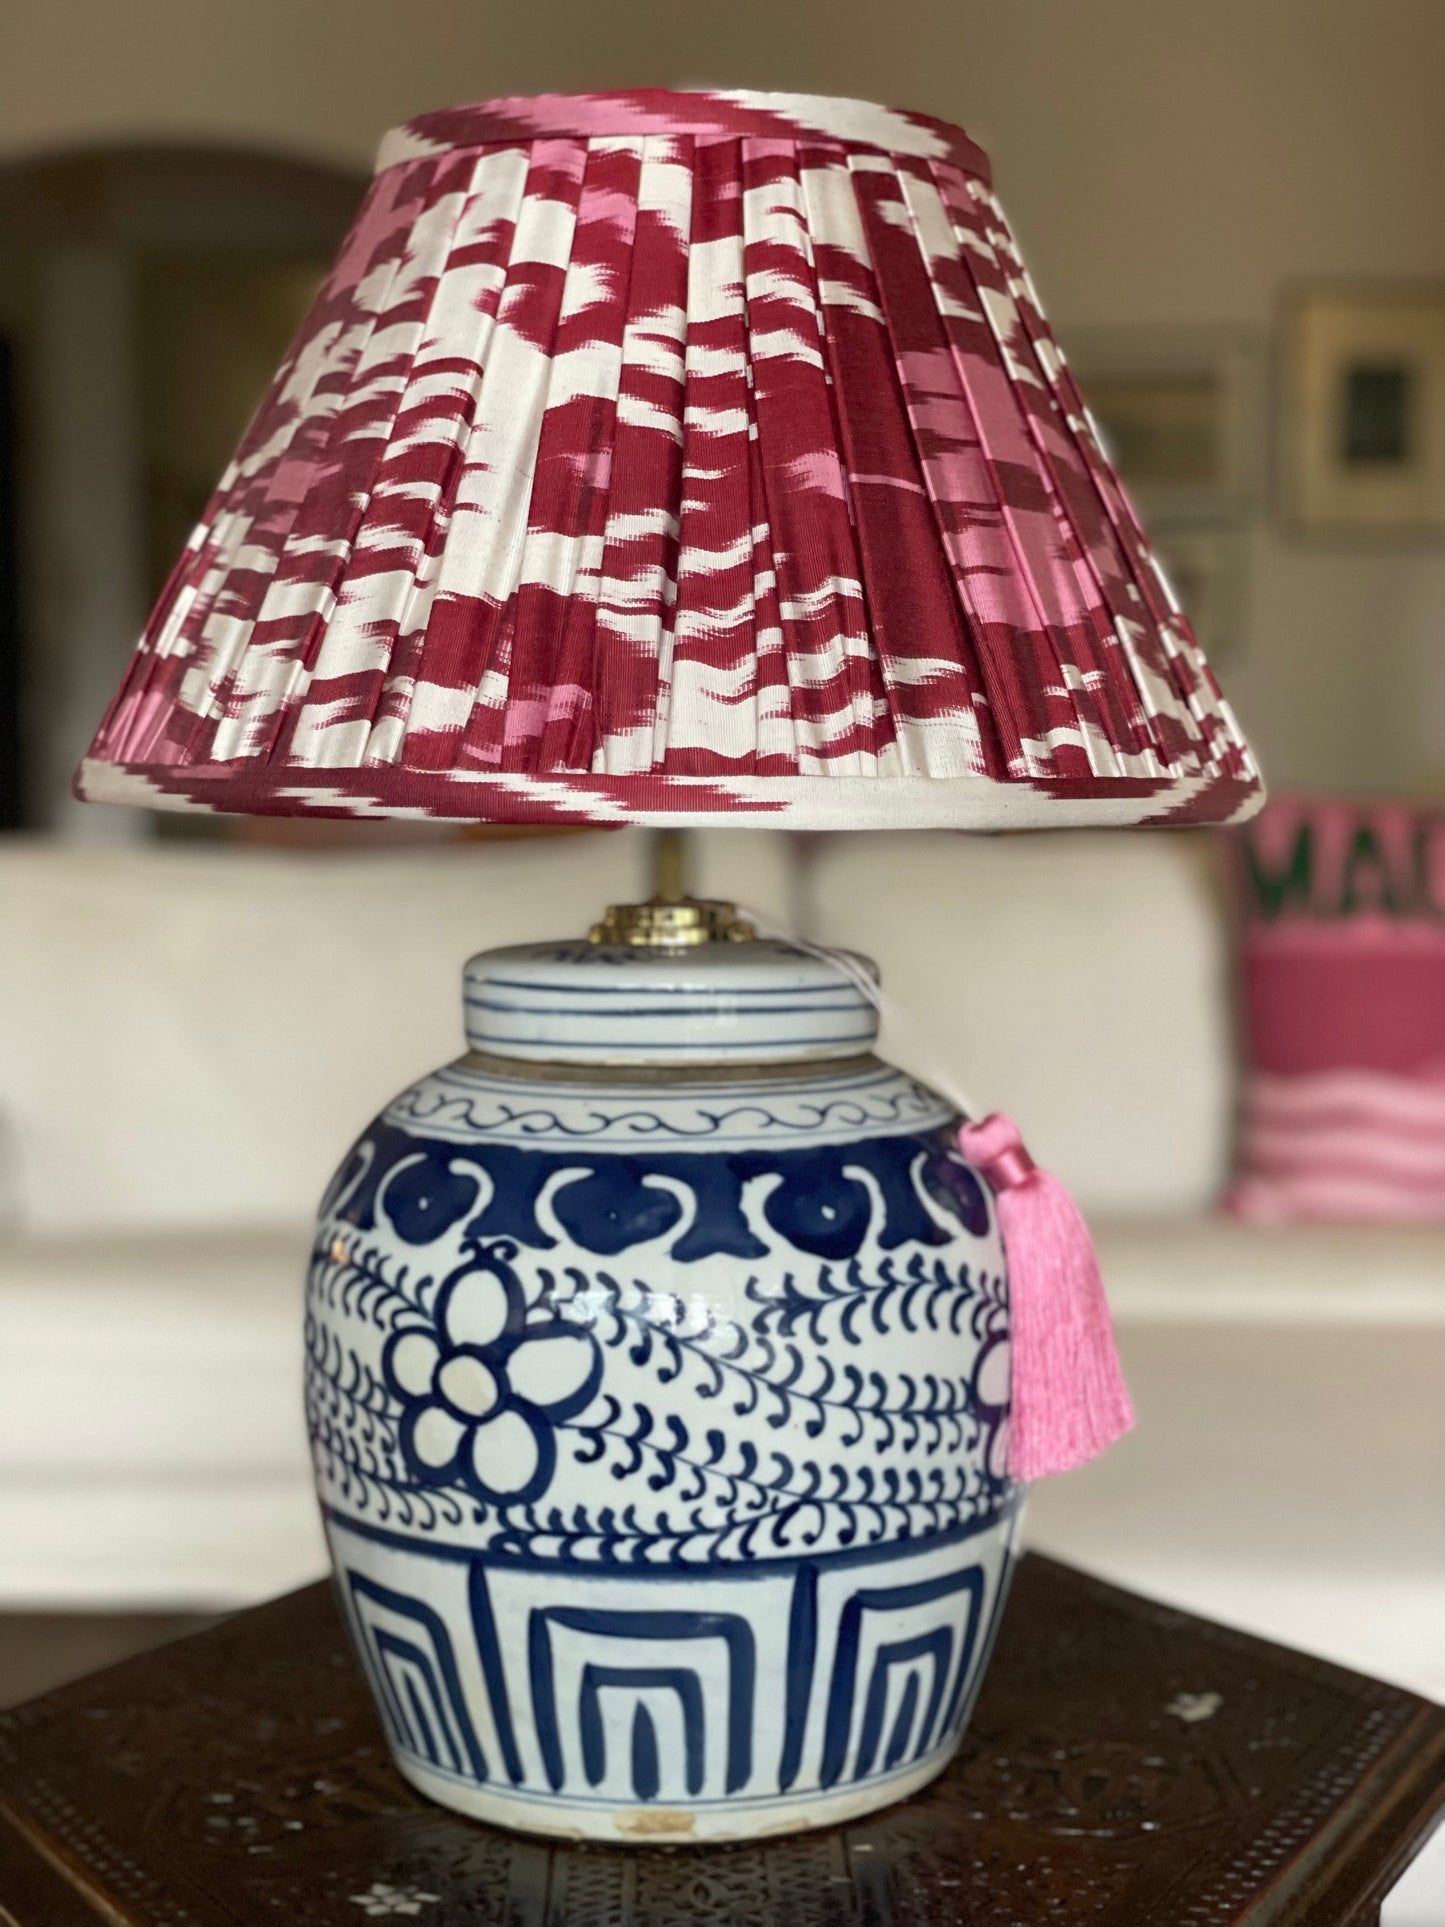 Garnet Silk Ikat Gathered Lamp Shade with Ruyi lamp base